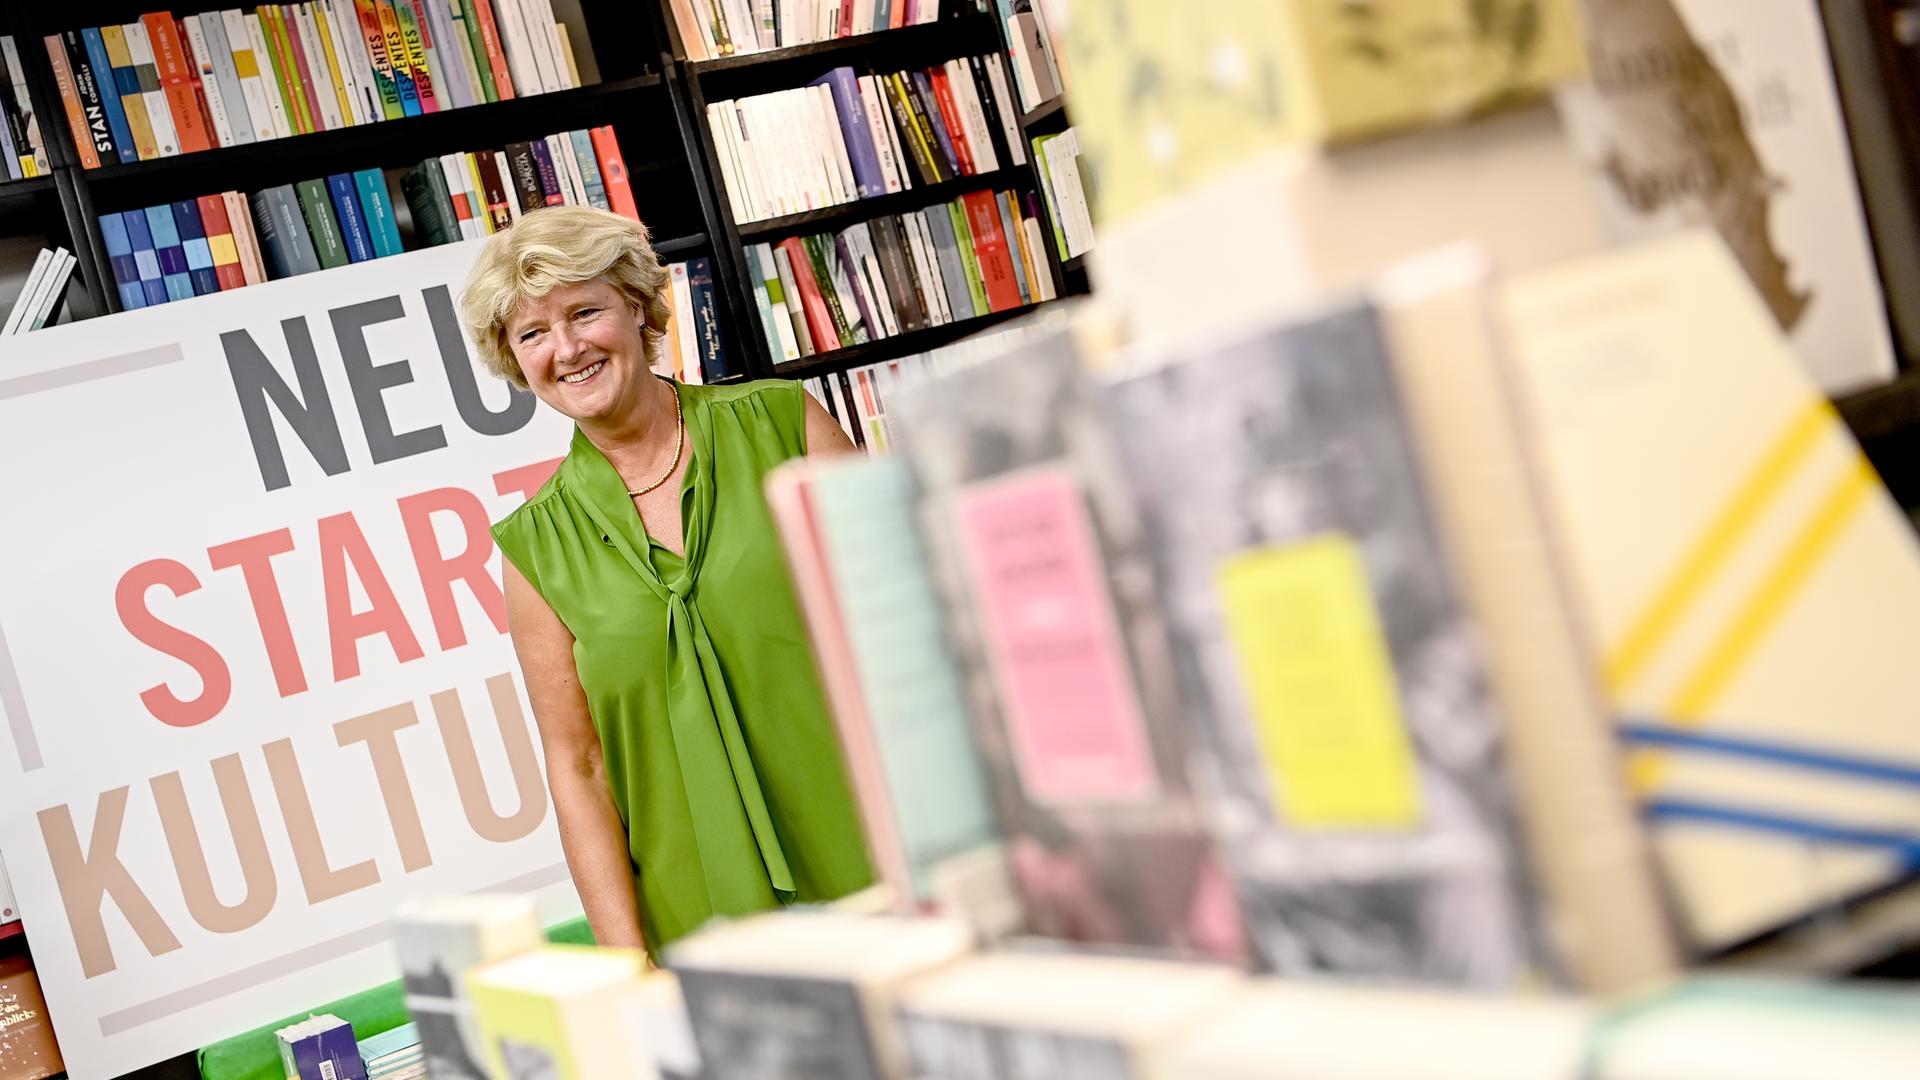 Kulturstaatsministerin Monika Grütters steht inmitten vieler Bücher in einer Buchhandlung, neben ihr ein Schild mit der Aufschrift "Neustart Kultur".